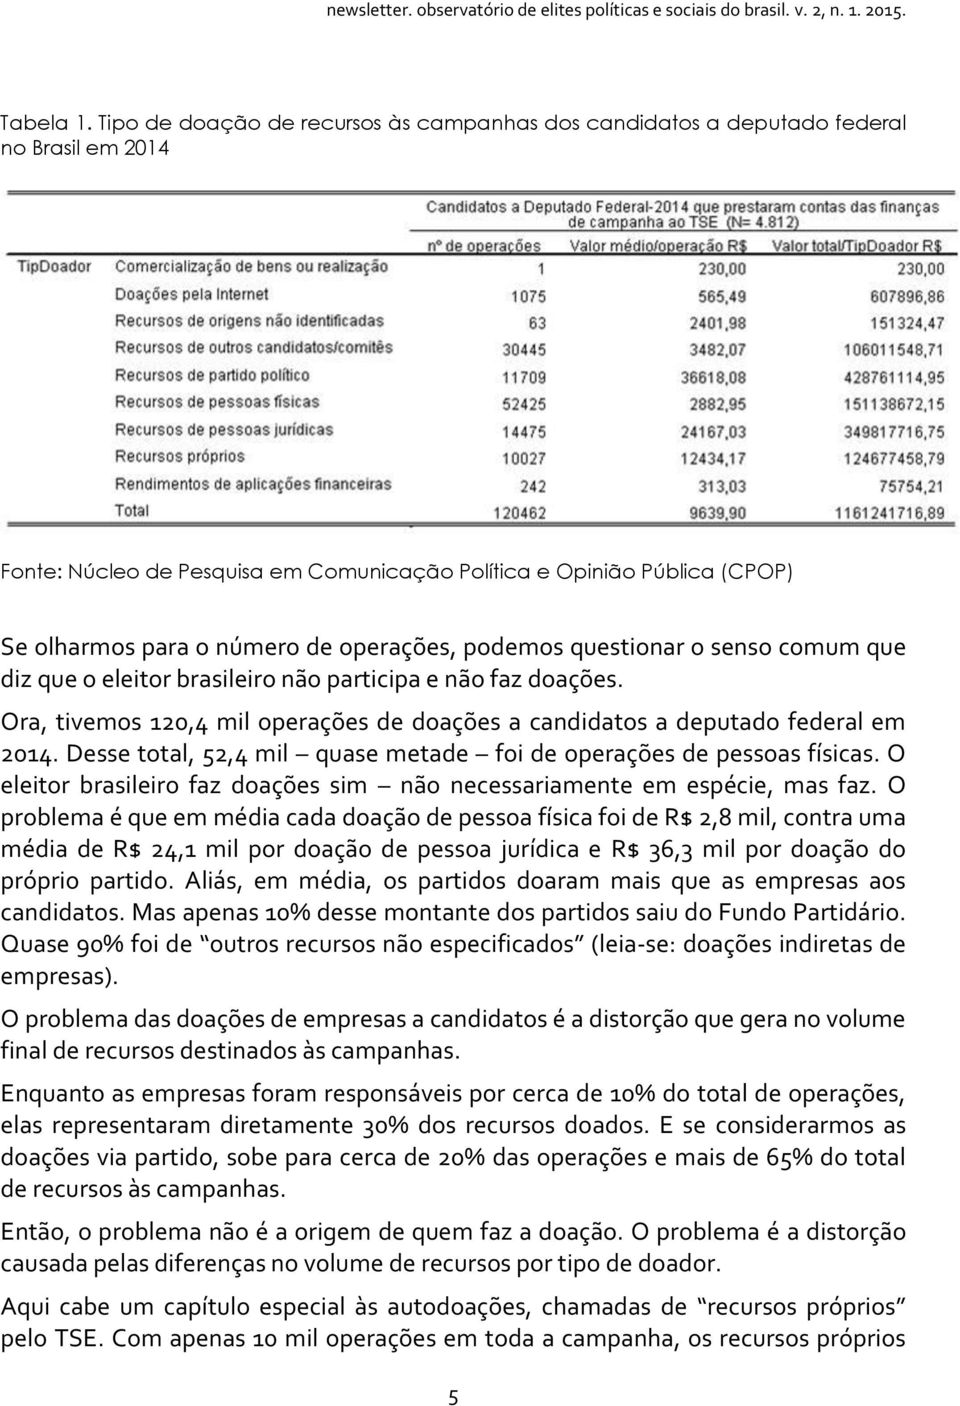 operações, podemos questionar o senso comum que diz que o eleitor brasileiro não participa e não faz doações. Ora, tivemos 120,4 mil operações de doações a candidatos a deputado federal em 2014.